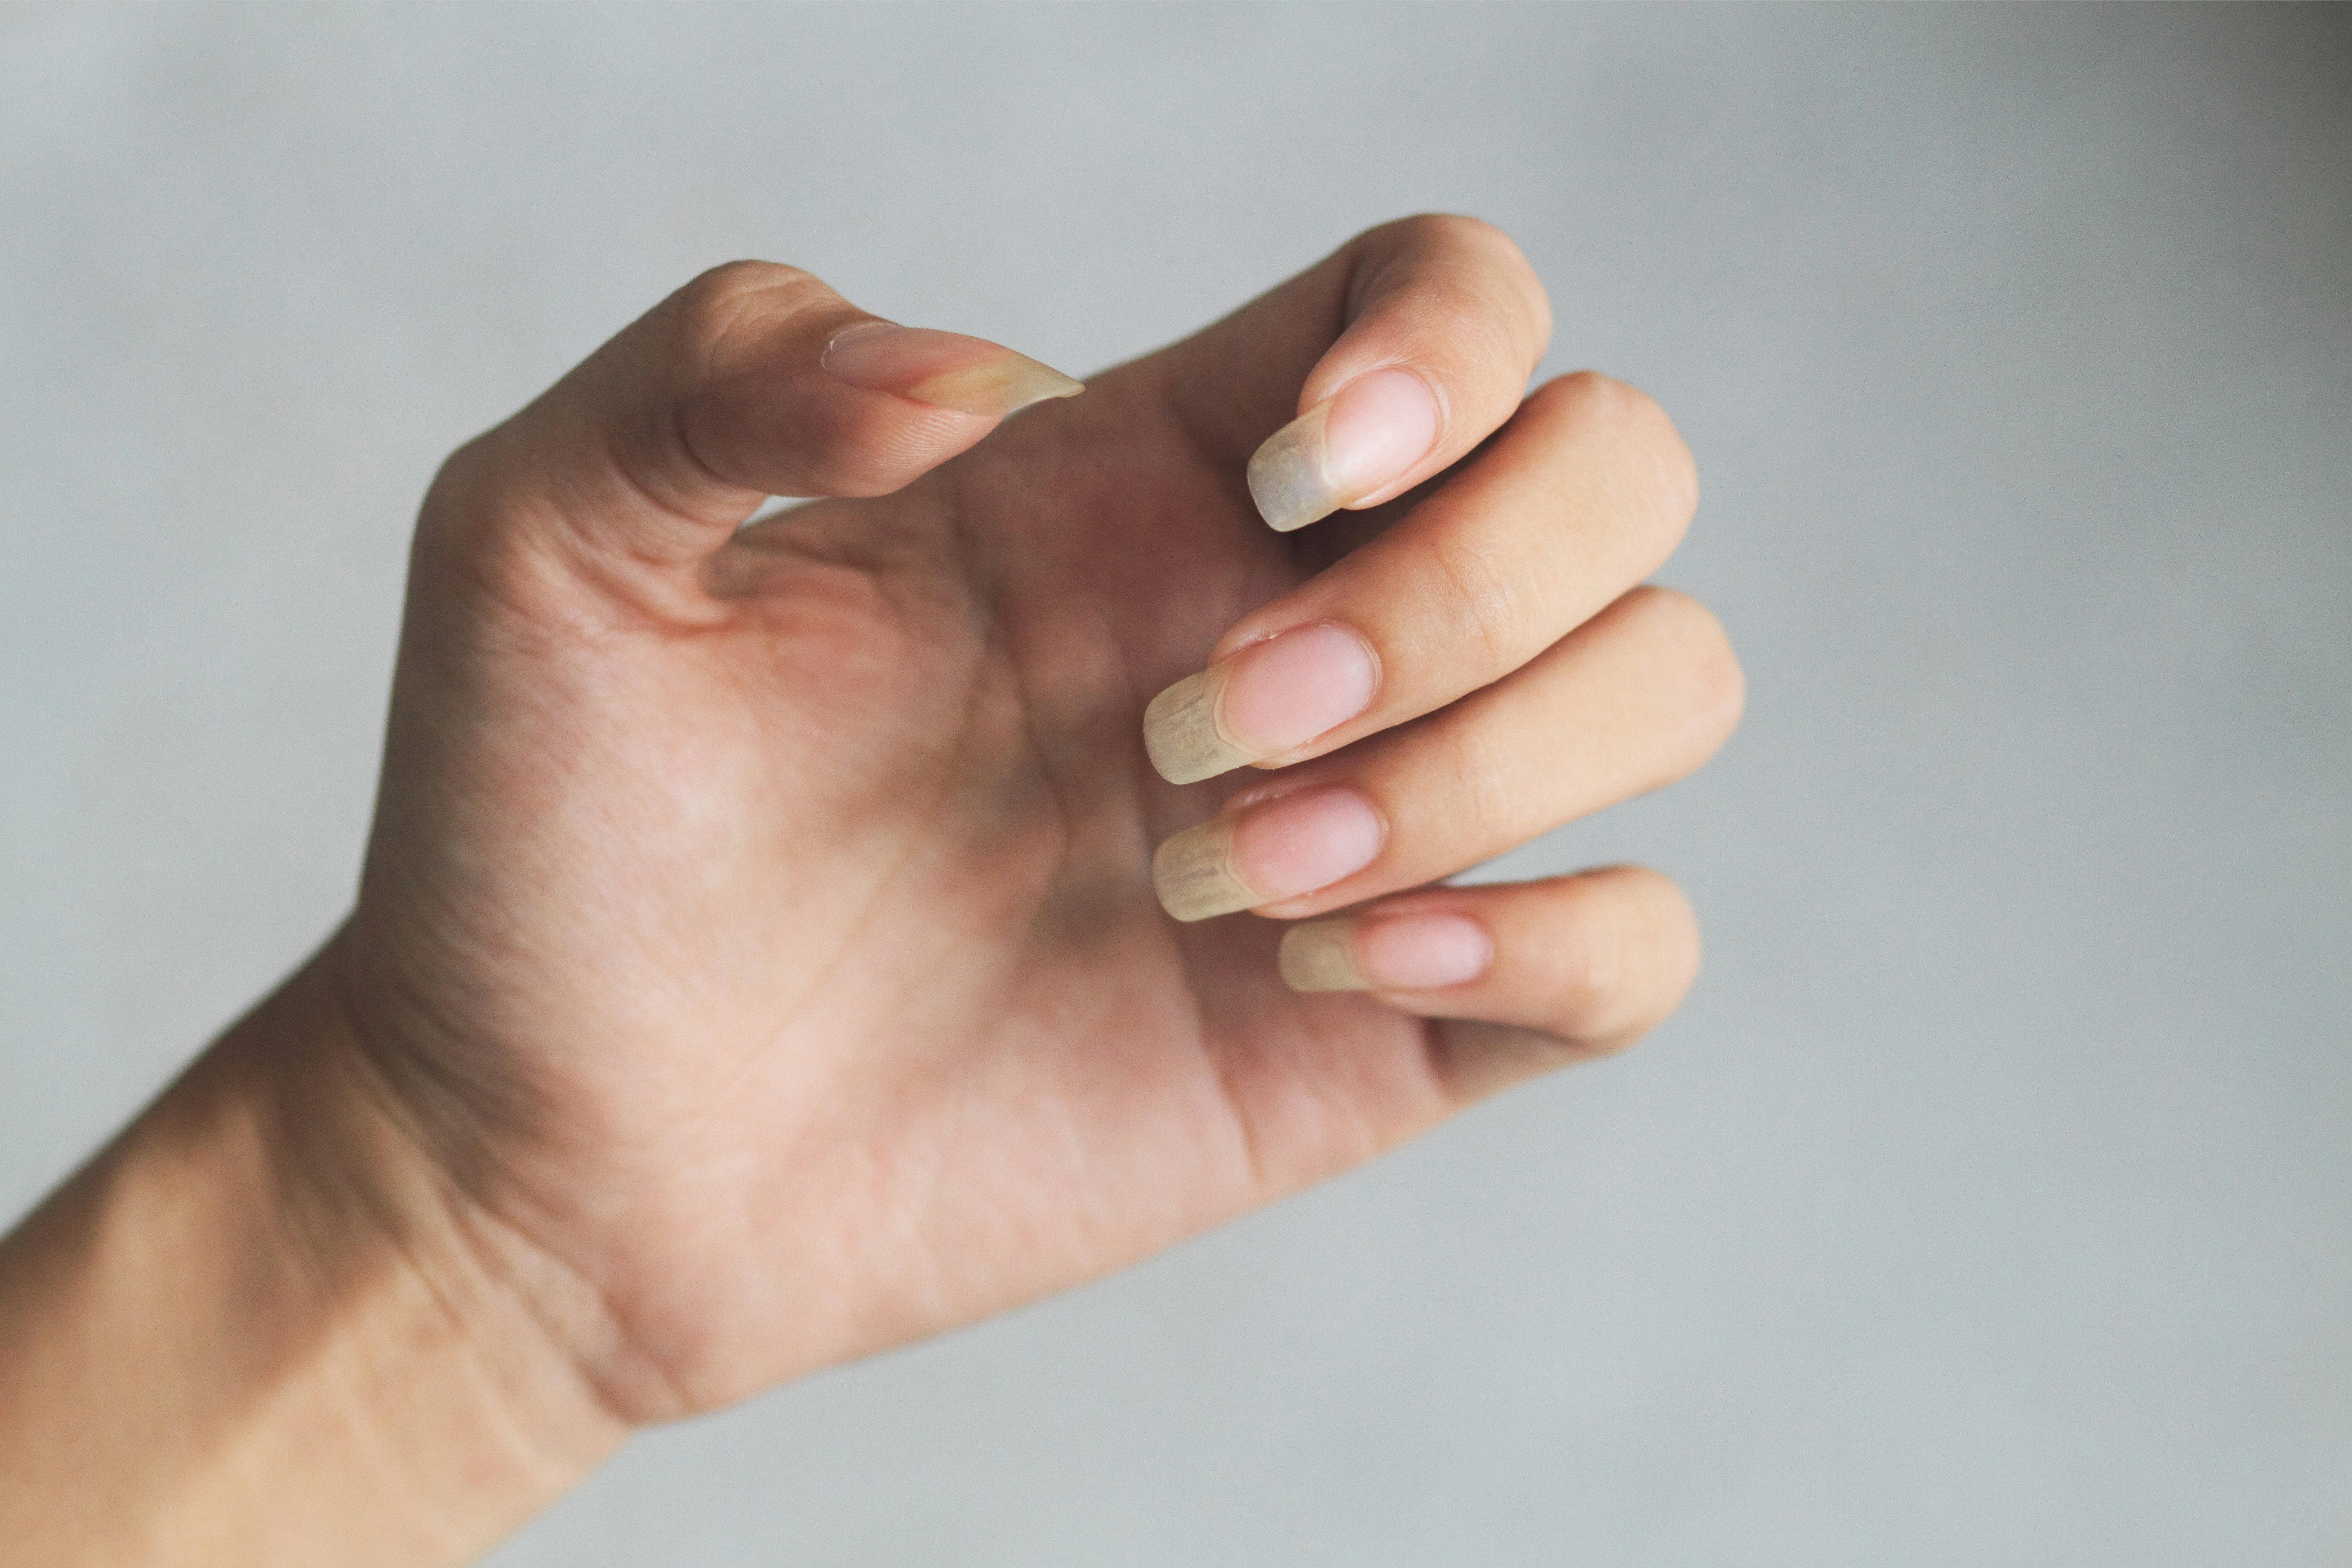 Gule – forebygger og behandler gule negle |